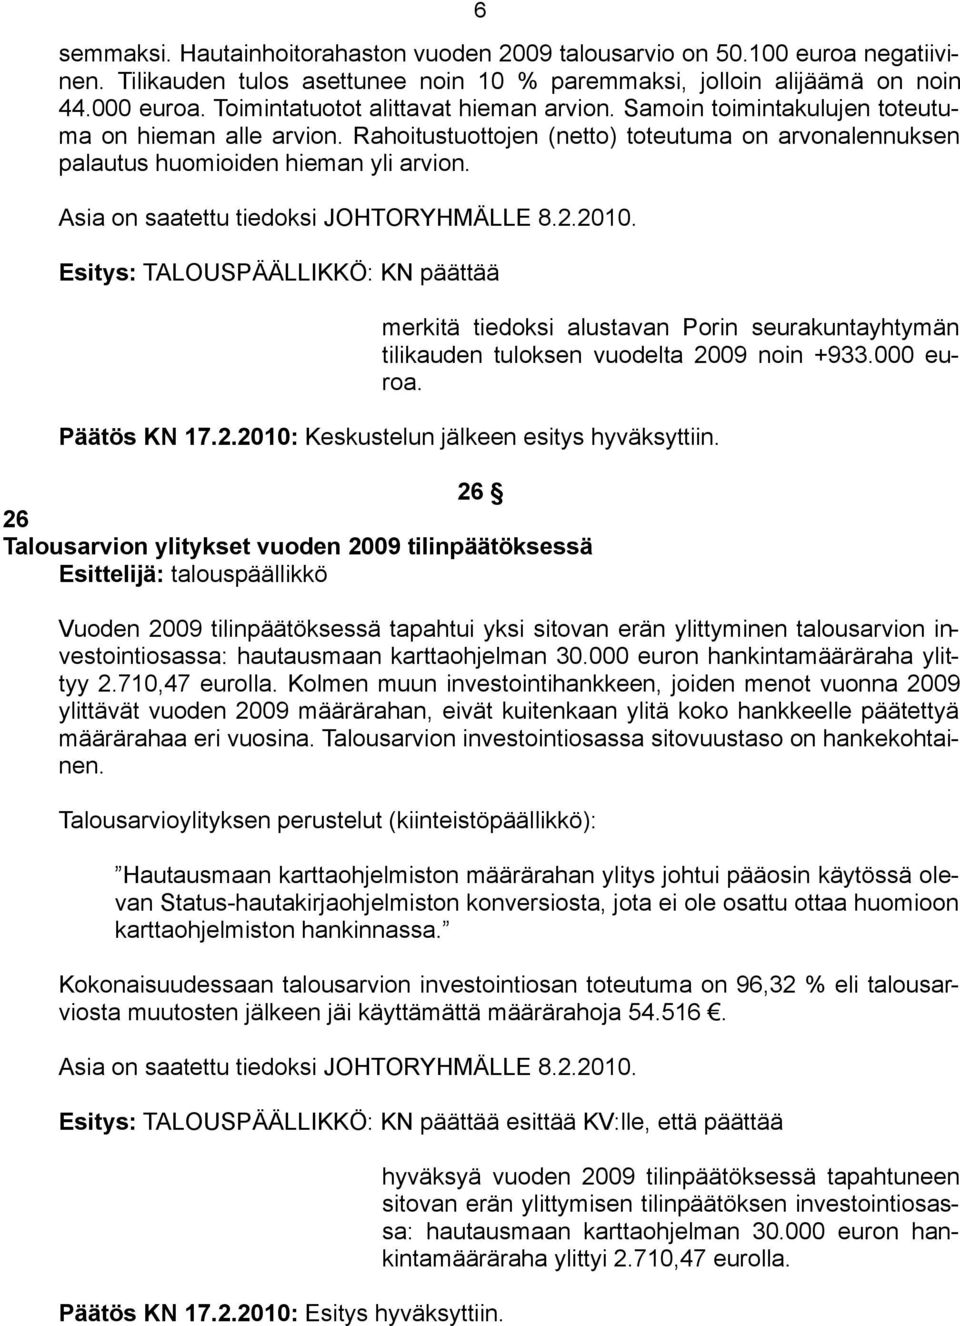 Esitys: TALOUSPÄÄLLIKKÖ: KN päättää merkitä tiedoksi alustavan Porin seurakuntayhtymän tilikauden tuloksen vuodelta 2009 noin +933.000 euroa. Päätös KN 17.2.2010: Keskustelun jälkeen esitys hyväksyttiin.